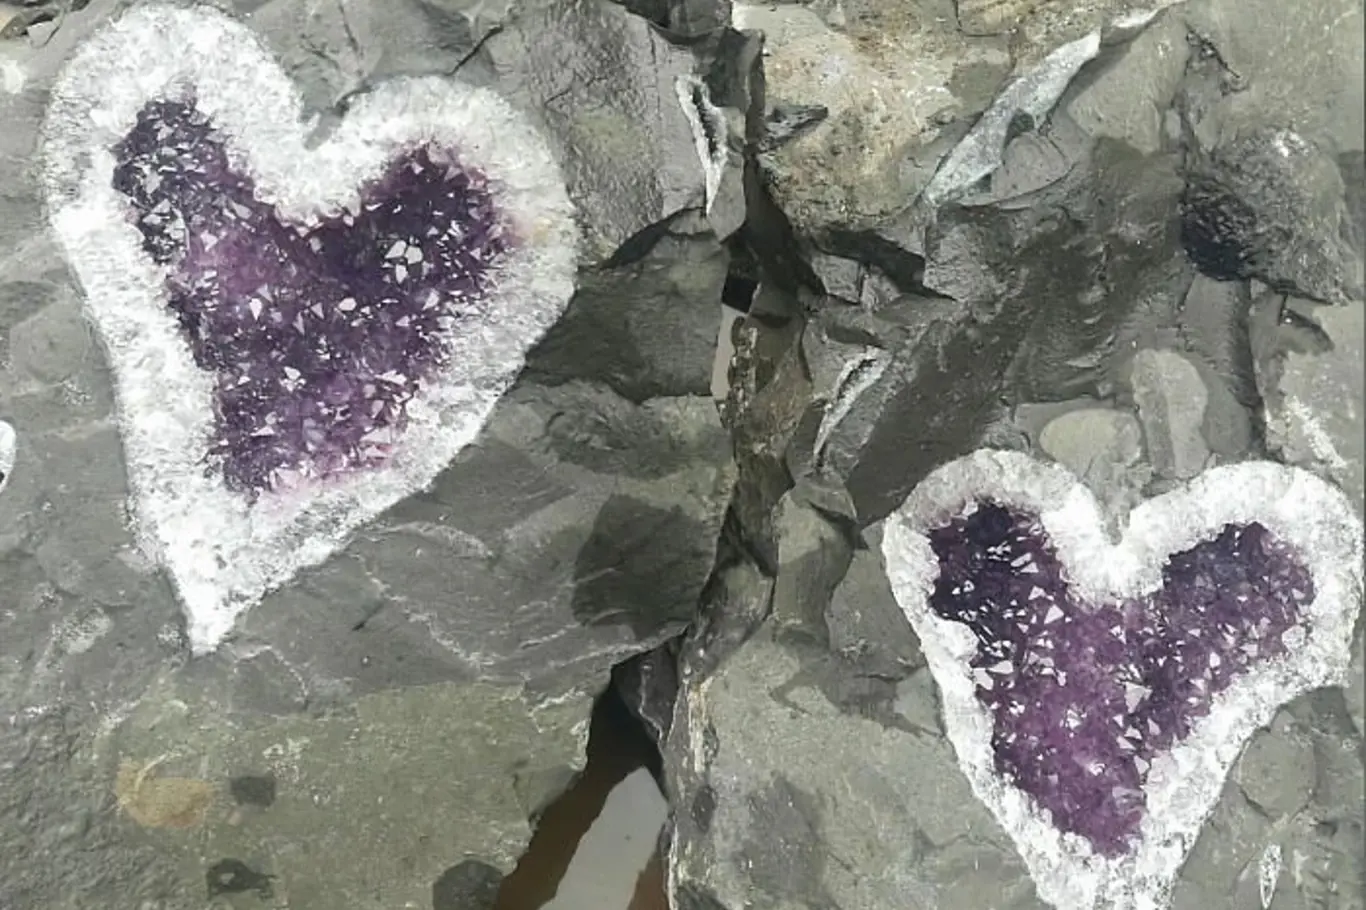 Skupina horníků zůstala ohromena, když objevila ohromující shluk třpytivých krystalů ametystu